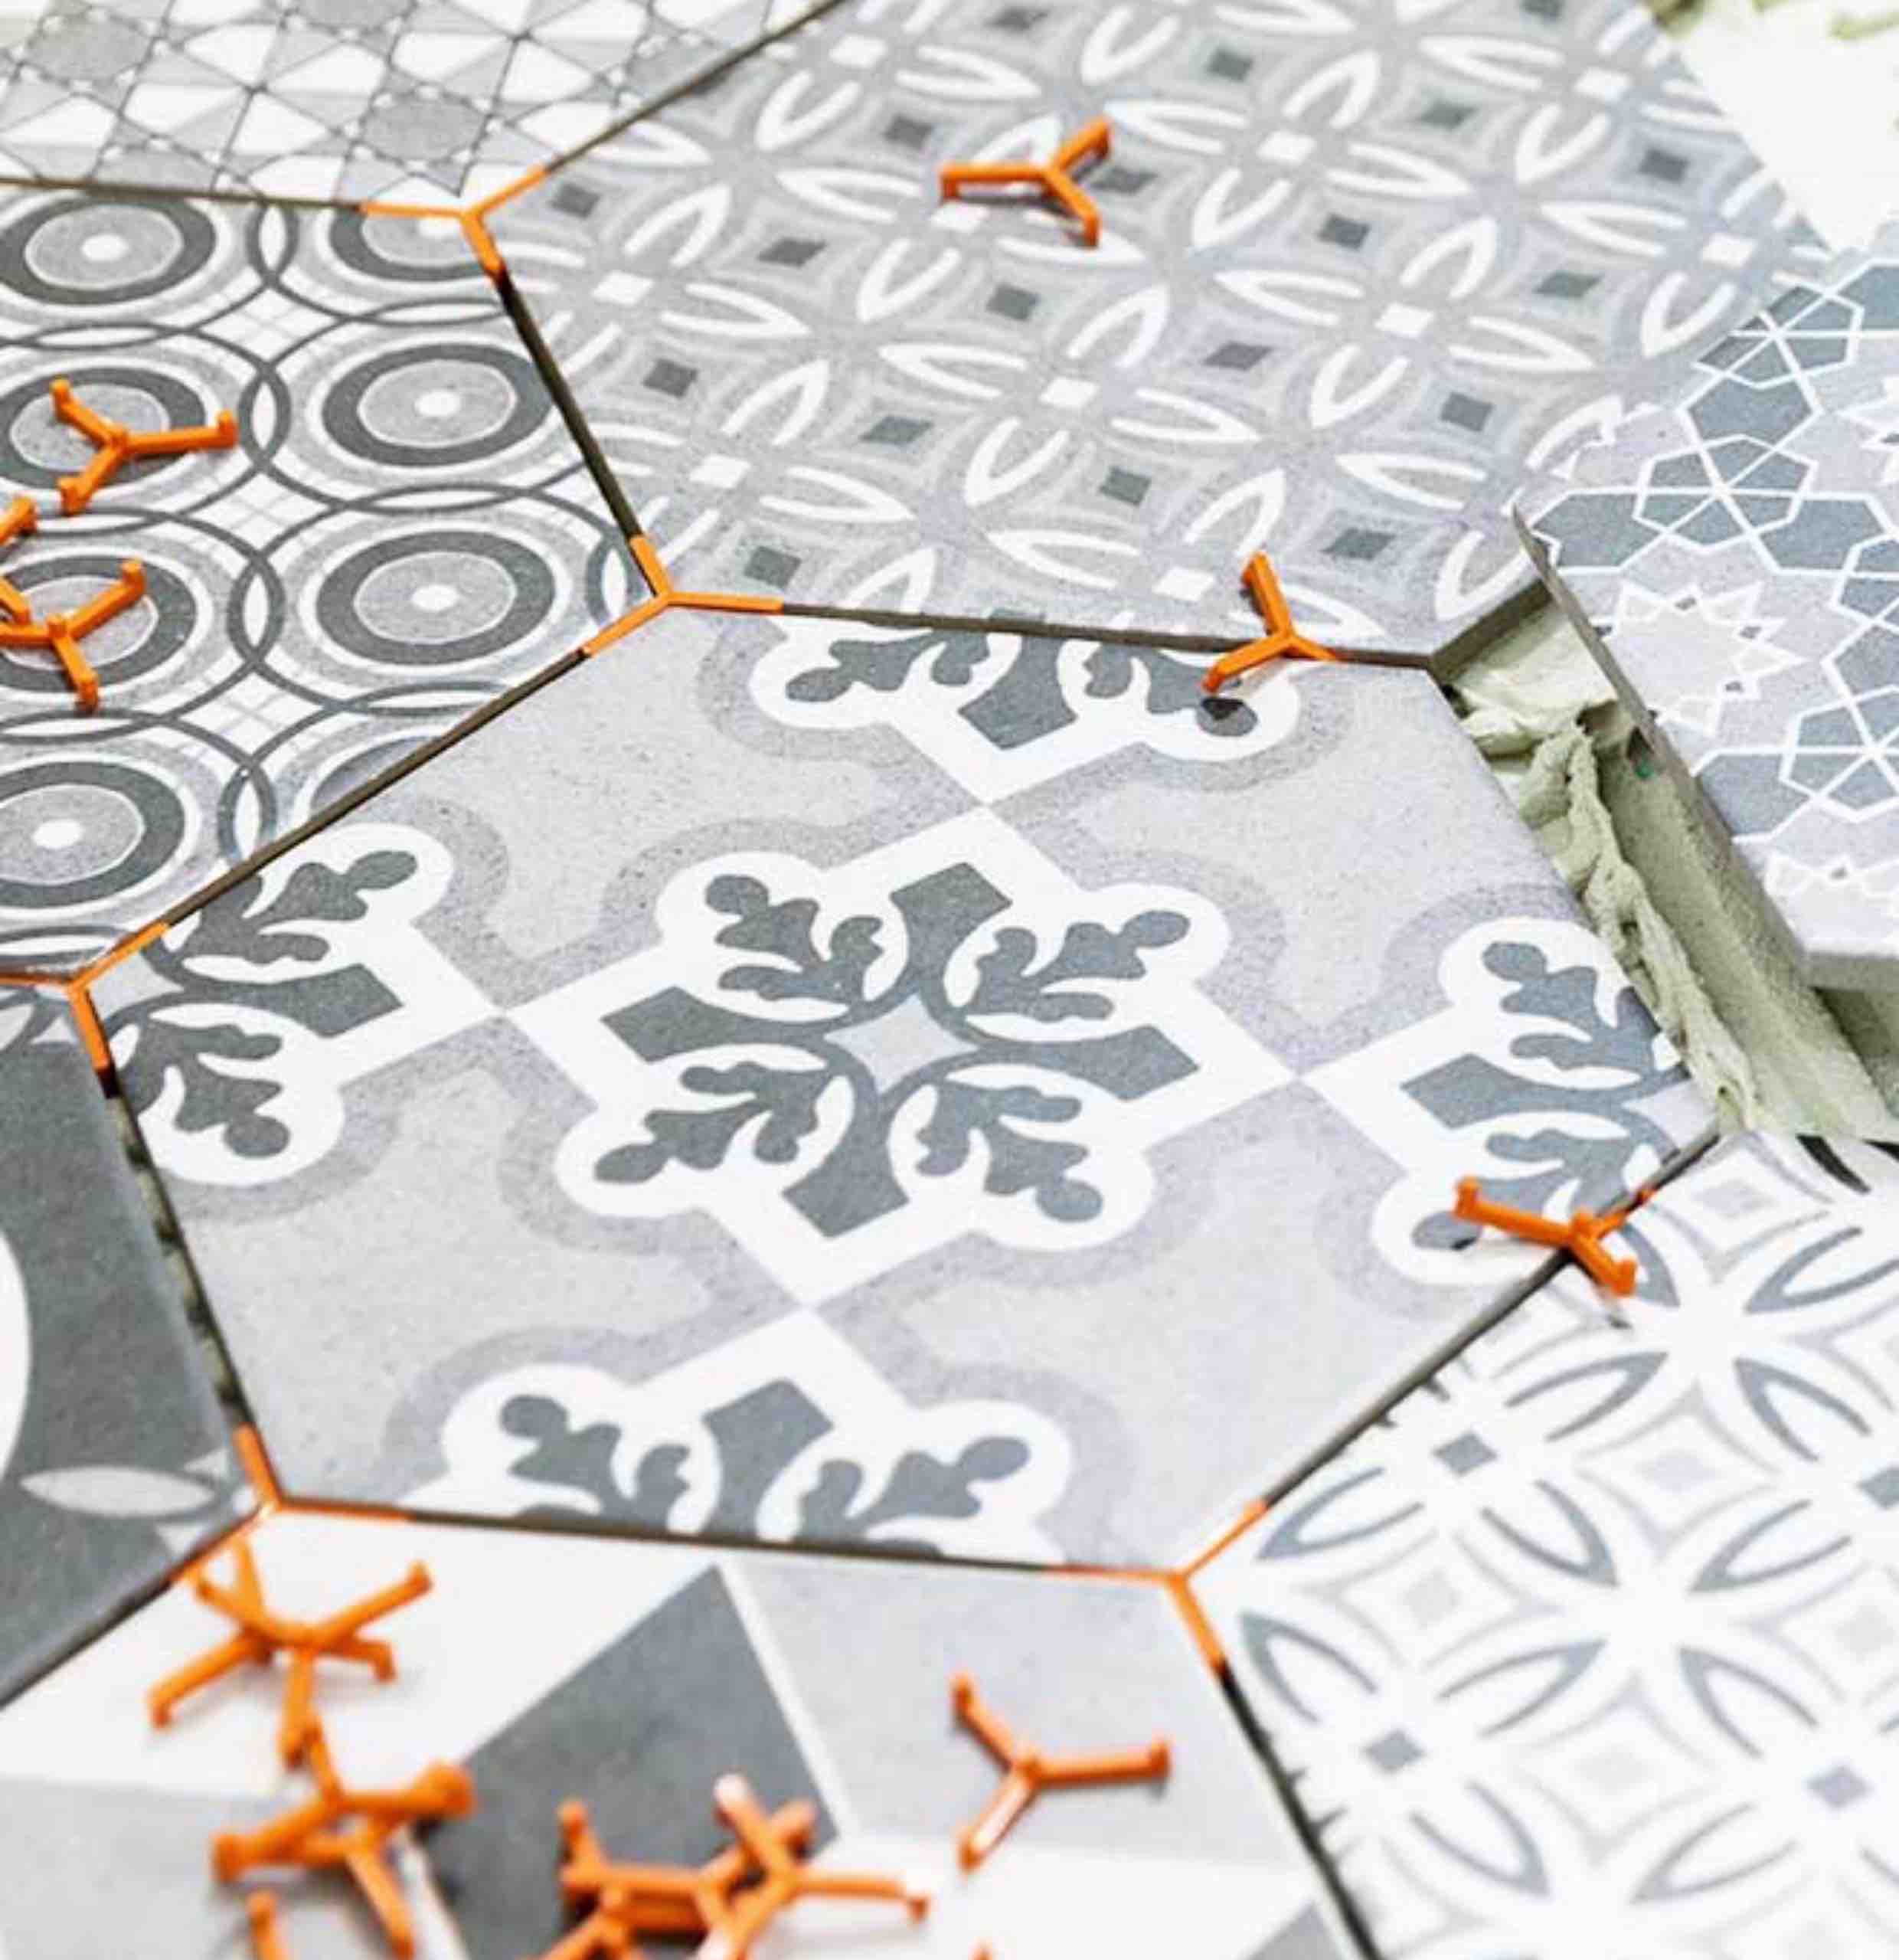 Trendy hexagonal tiles installed by Footprints Floors in Minneapolis.